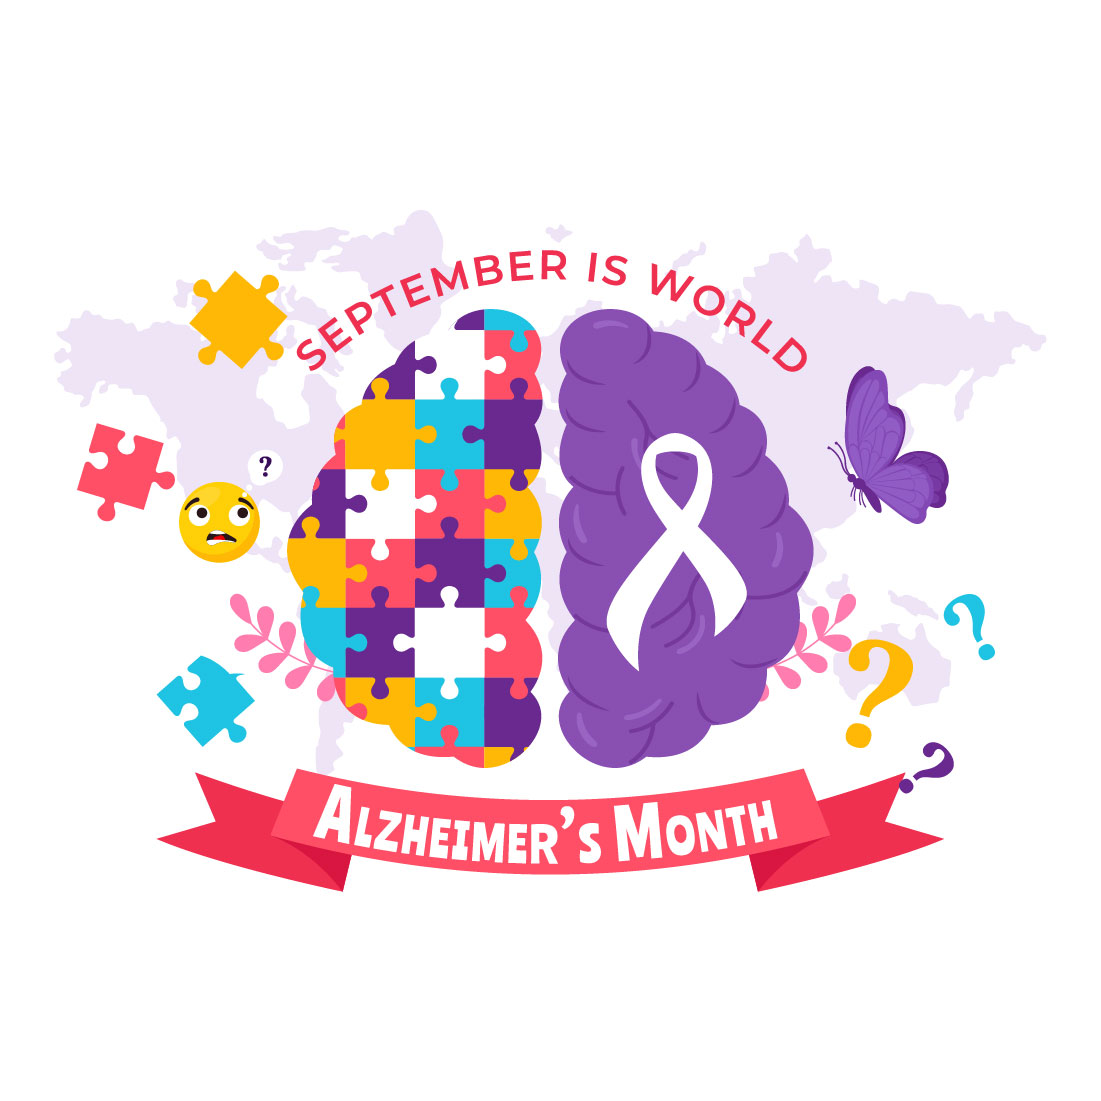 13 World Alzheimer's Day Illustration preview image.